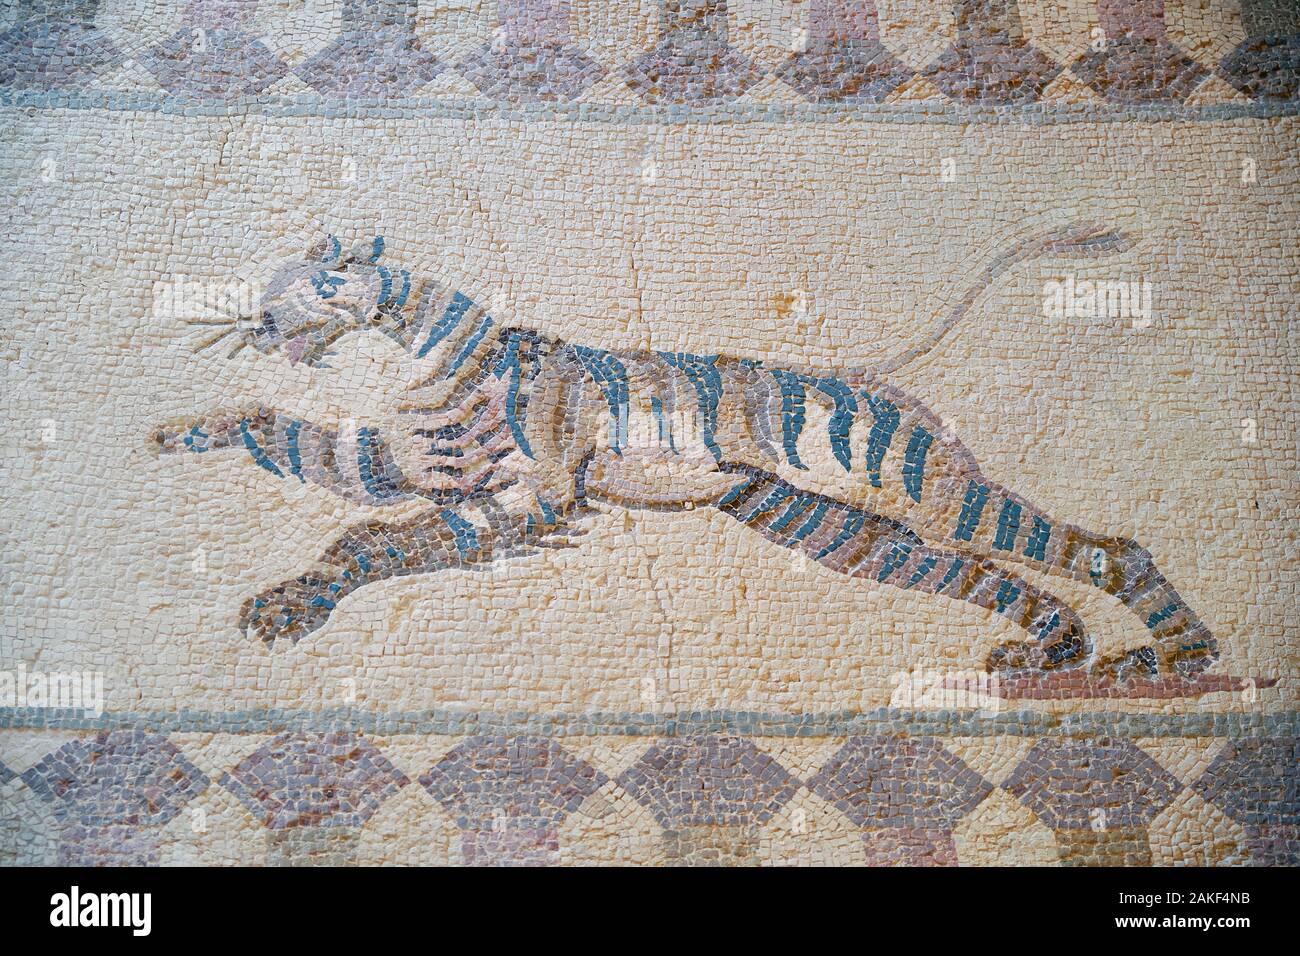 PAPHOS, Chypre - Juin 08, 2018 : Élément de mosaïque représentant la scène de chasse sous Tiger représentant sur le sol de la villa Dionysos. Paphos Archaebactérie Banque D'Images